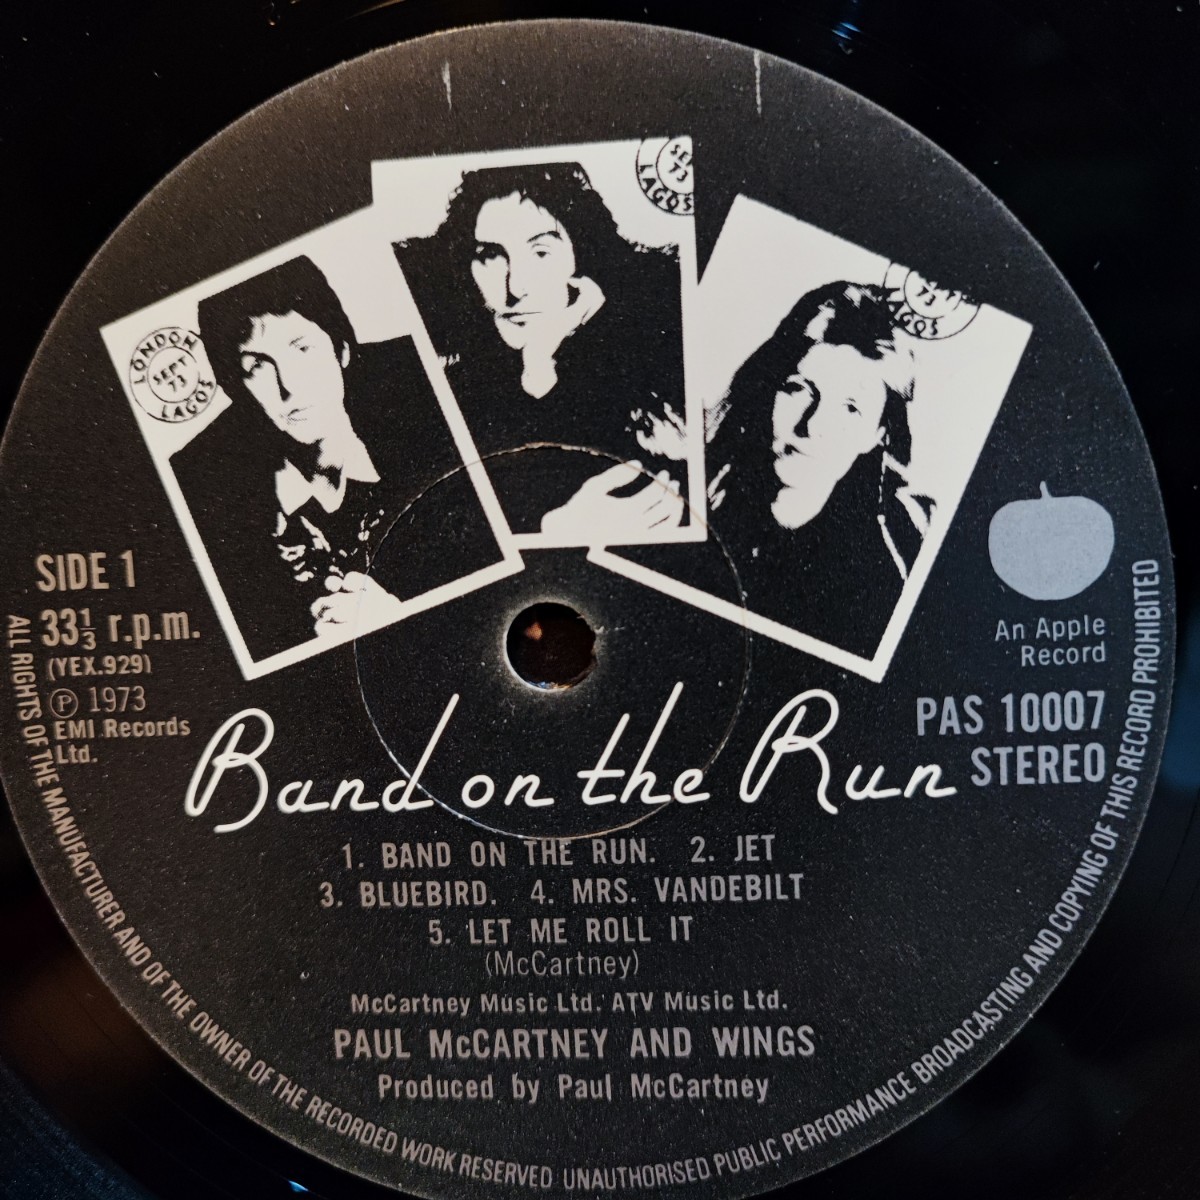 LP UK ORIG BAND ON THE RUN バンド・オン・ザ・ラン ポール・マッカートニー&ウイングス Paul McCartney & WINGS オリジナル 美盤_画像6